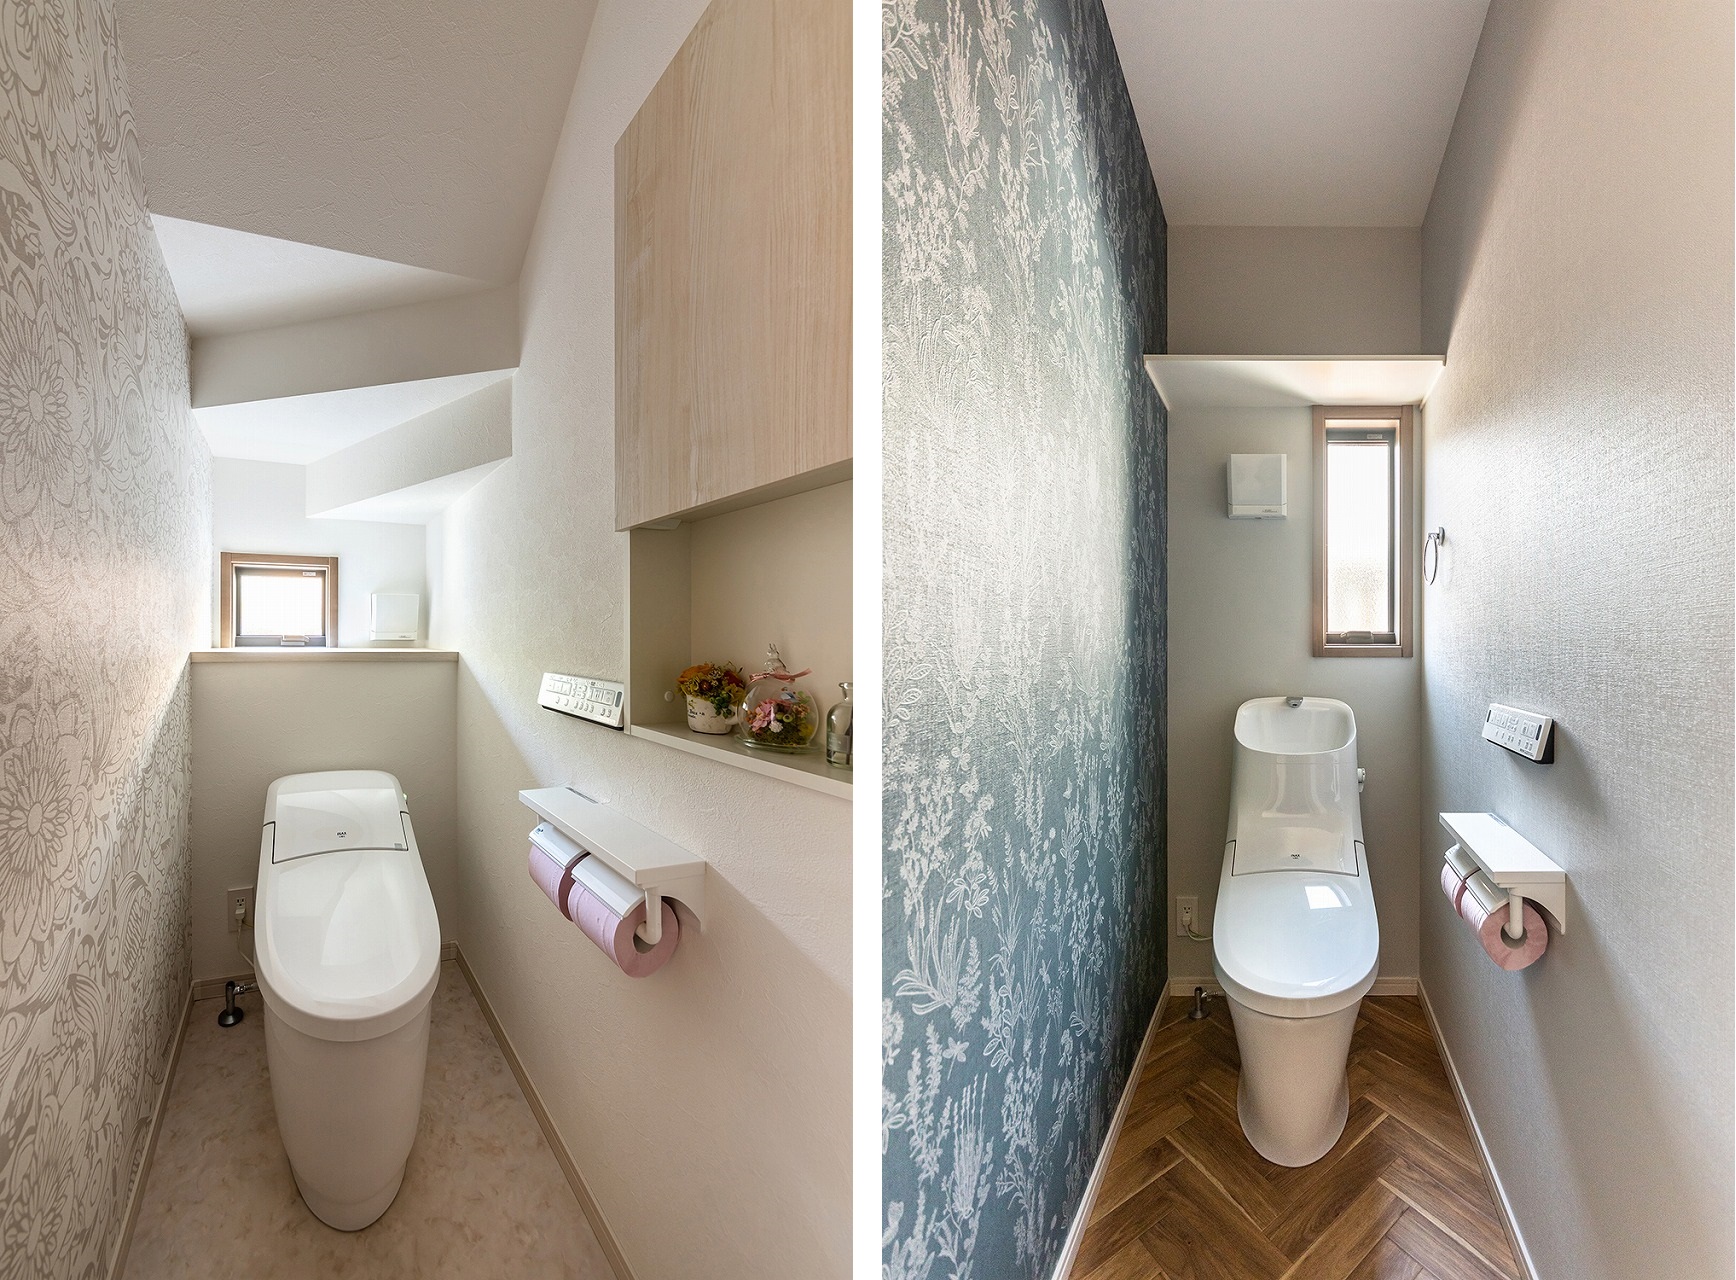 2ヶ所あるトイレは、どちらもおしゃれで特別感のある空間に仕上がりました。<br />
写真左：ホワイトカラーをベースにボタニカル柄のクロスが映える上品でモダンな空間に。<br />
写真右：深みのあるグリーンの植物柄のクロスとヘリンボーンの床がマッチしたデザイン性の高いオシャレな空間に。